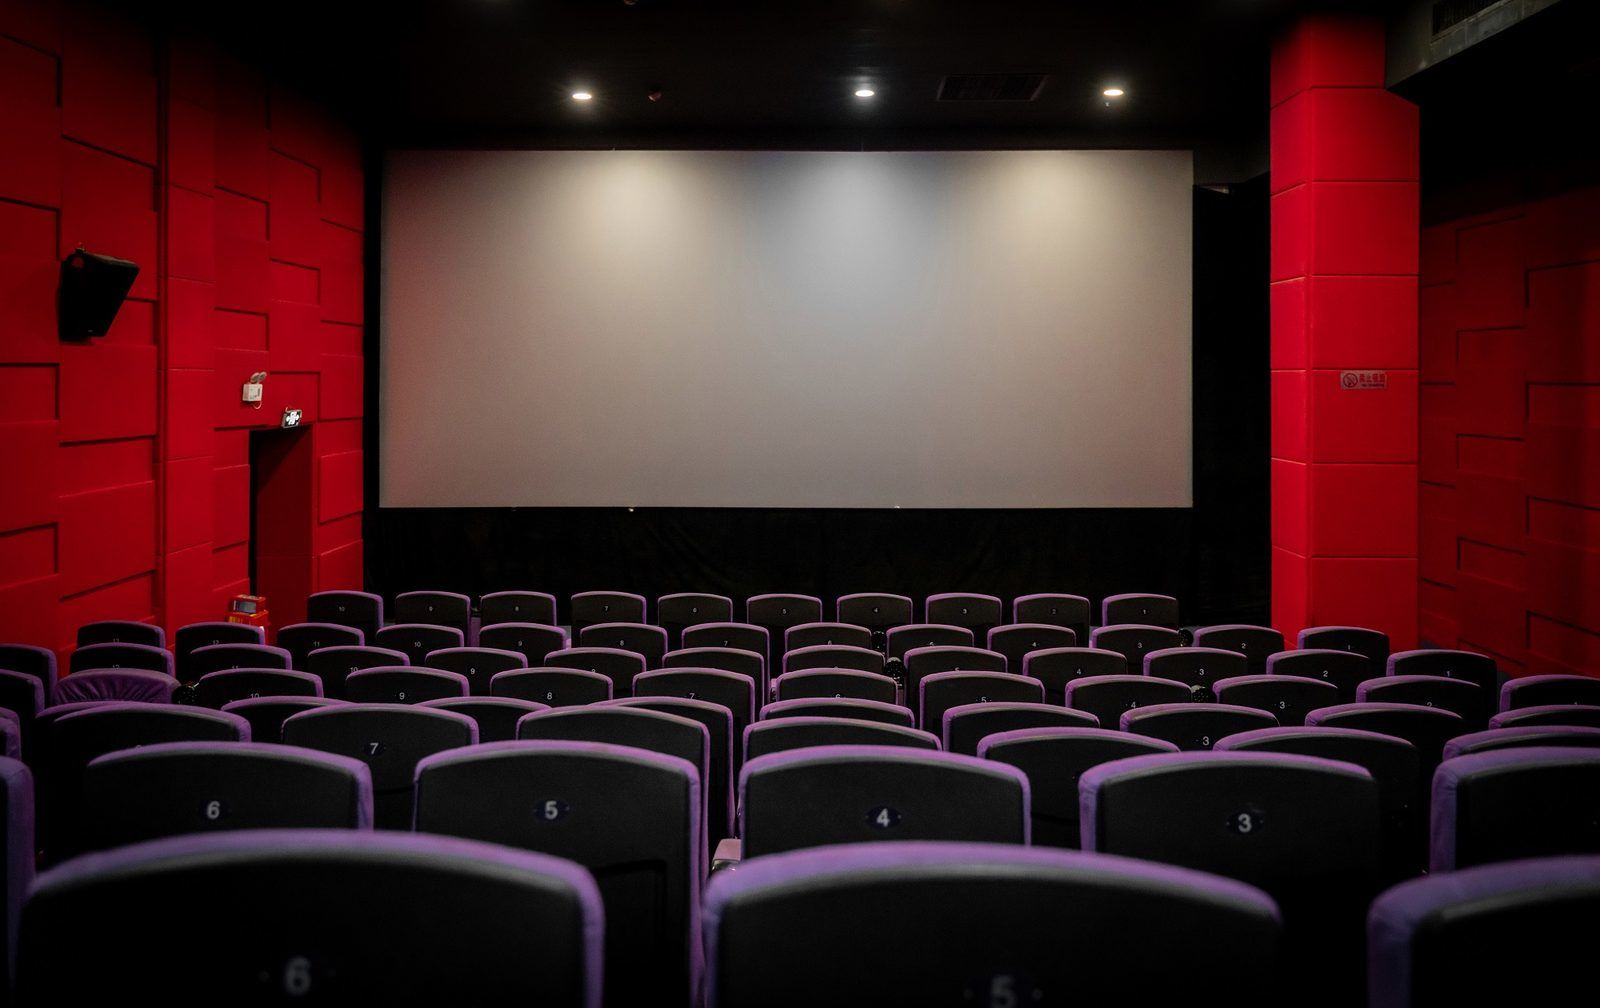 "Кина" не будет: в России массово закрываются кинотеатры - в чем причины